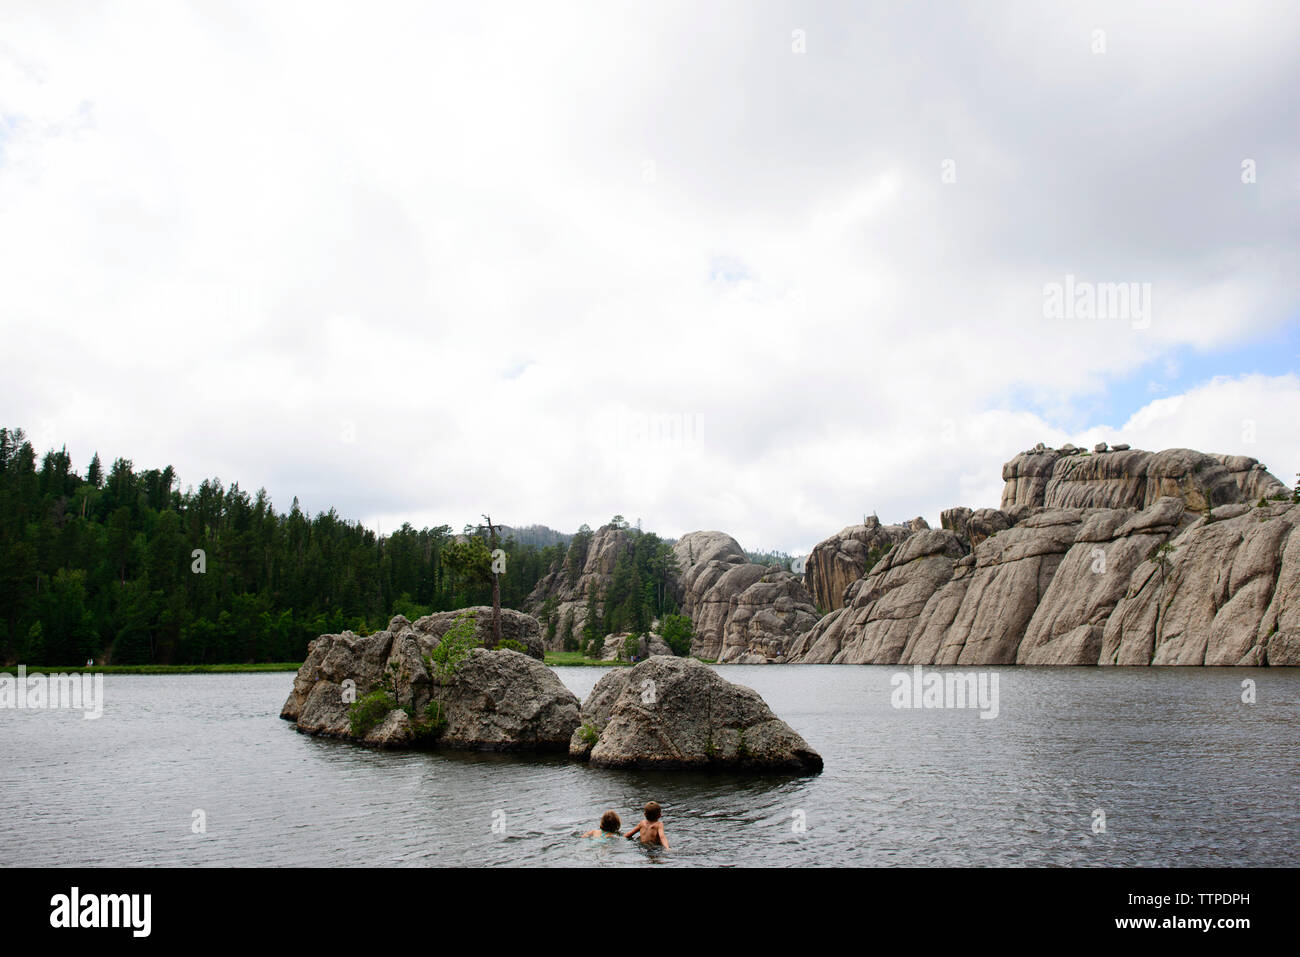 Siblings swimming in Sylvan Lake against sky Stock Photo